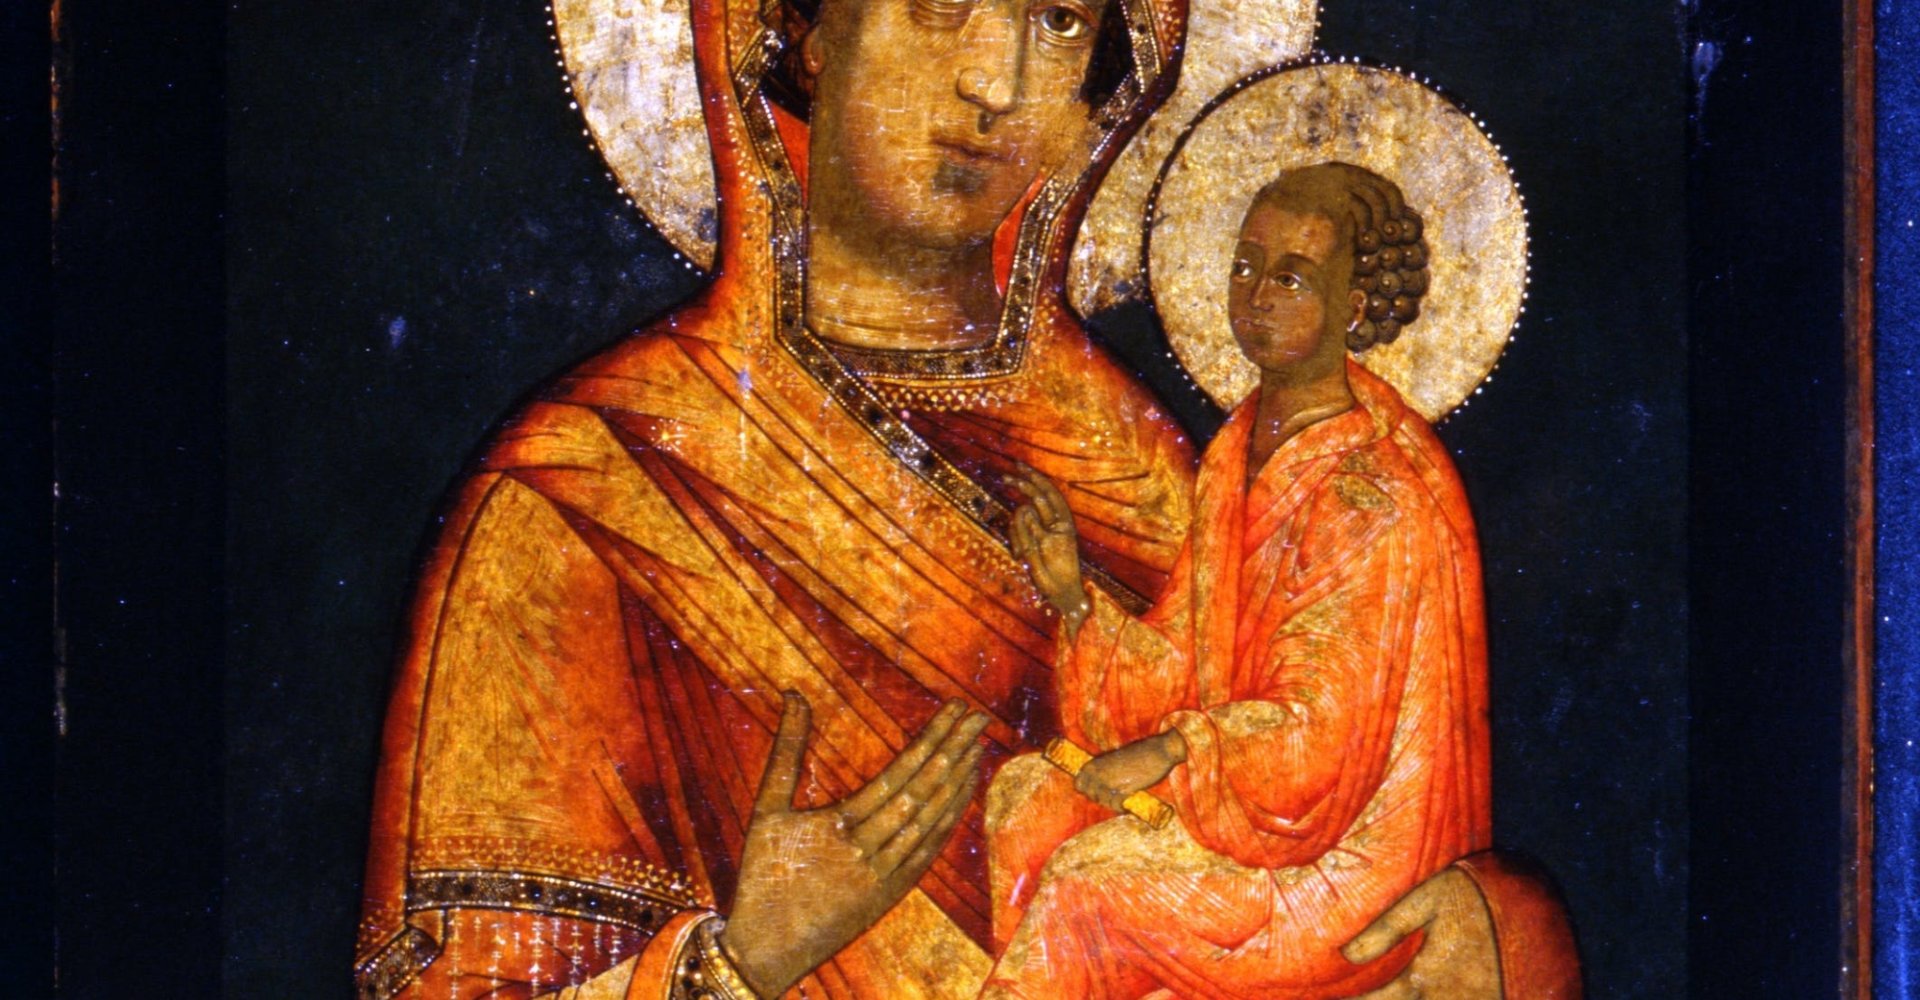 Icona Madre di Dio di Tichvin